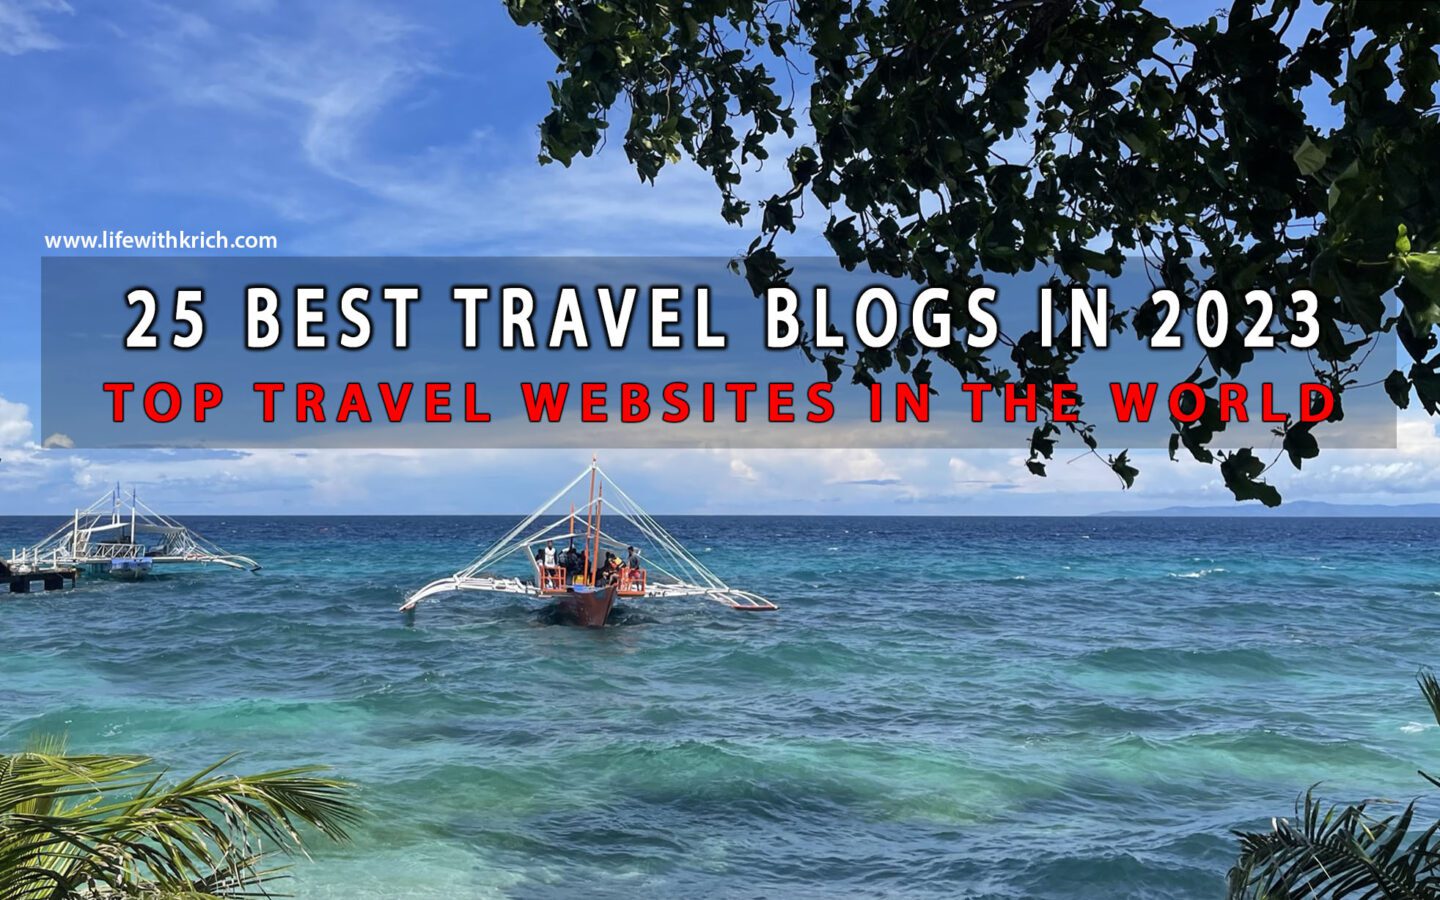 25 Best Travel Blogs in 2023